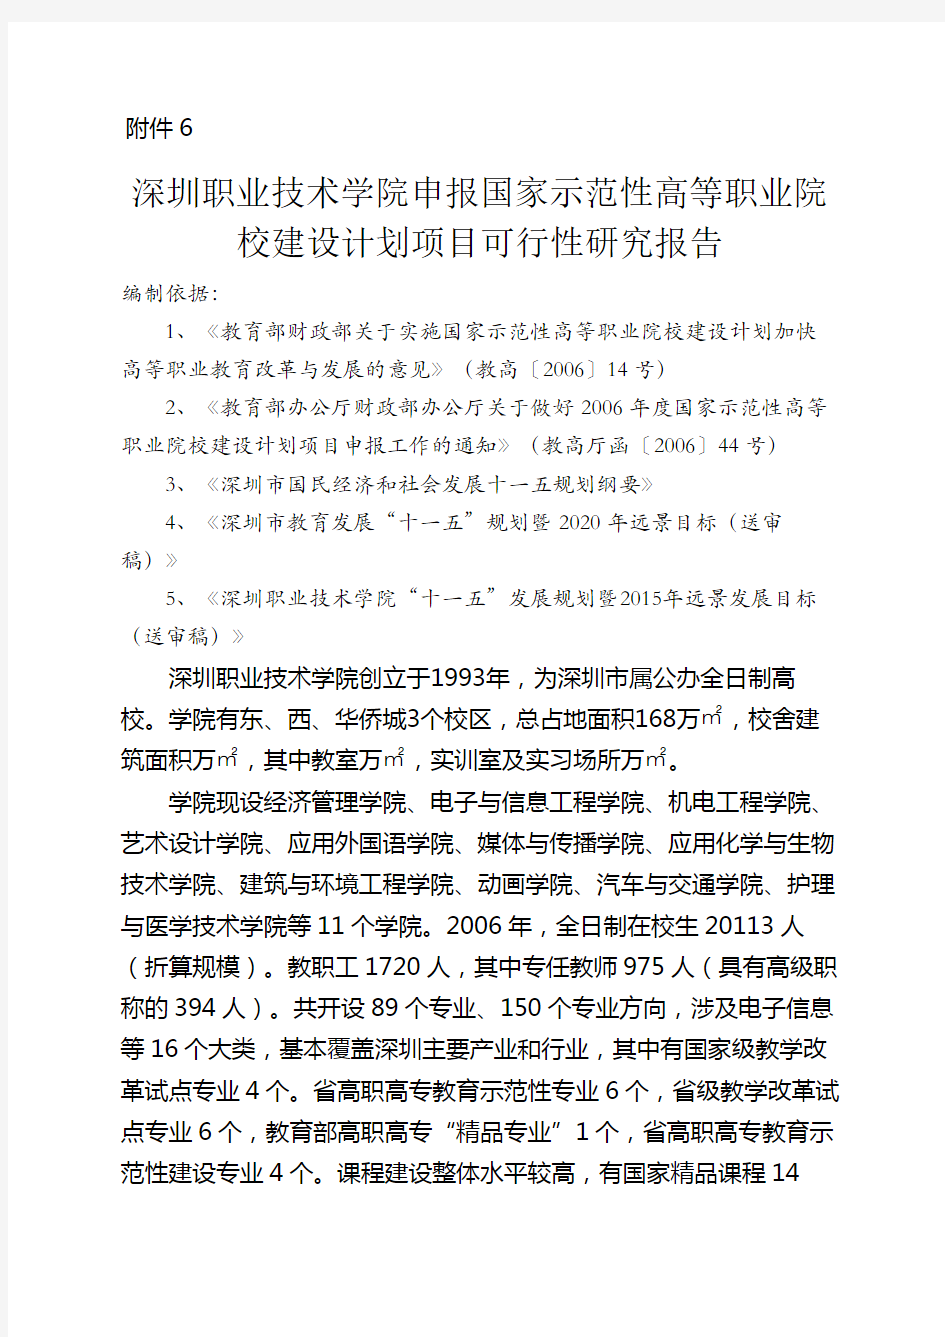 深圳职业技术学院申报国家示范性高等职业院校建设计划项目可行性研究报告